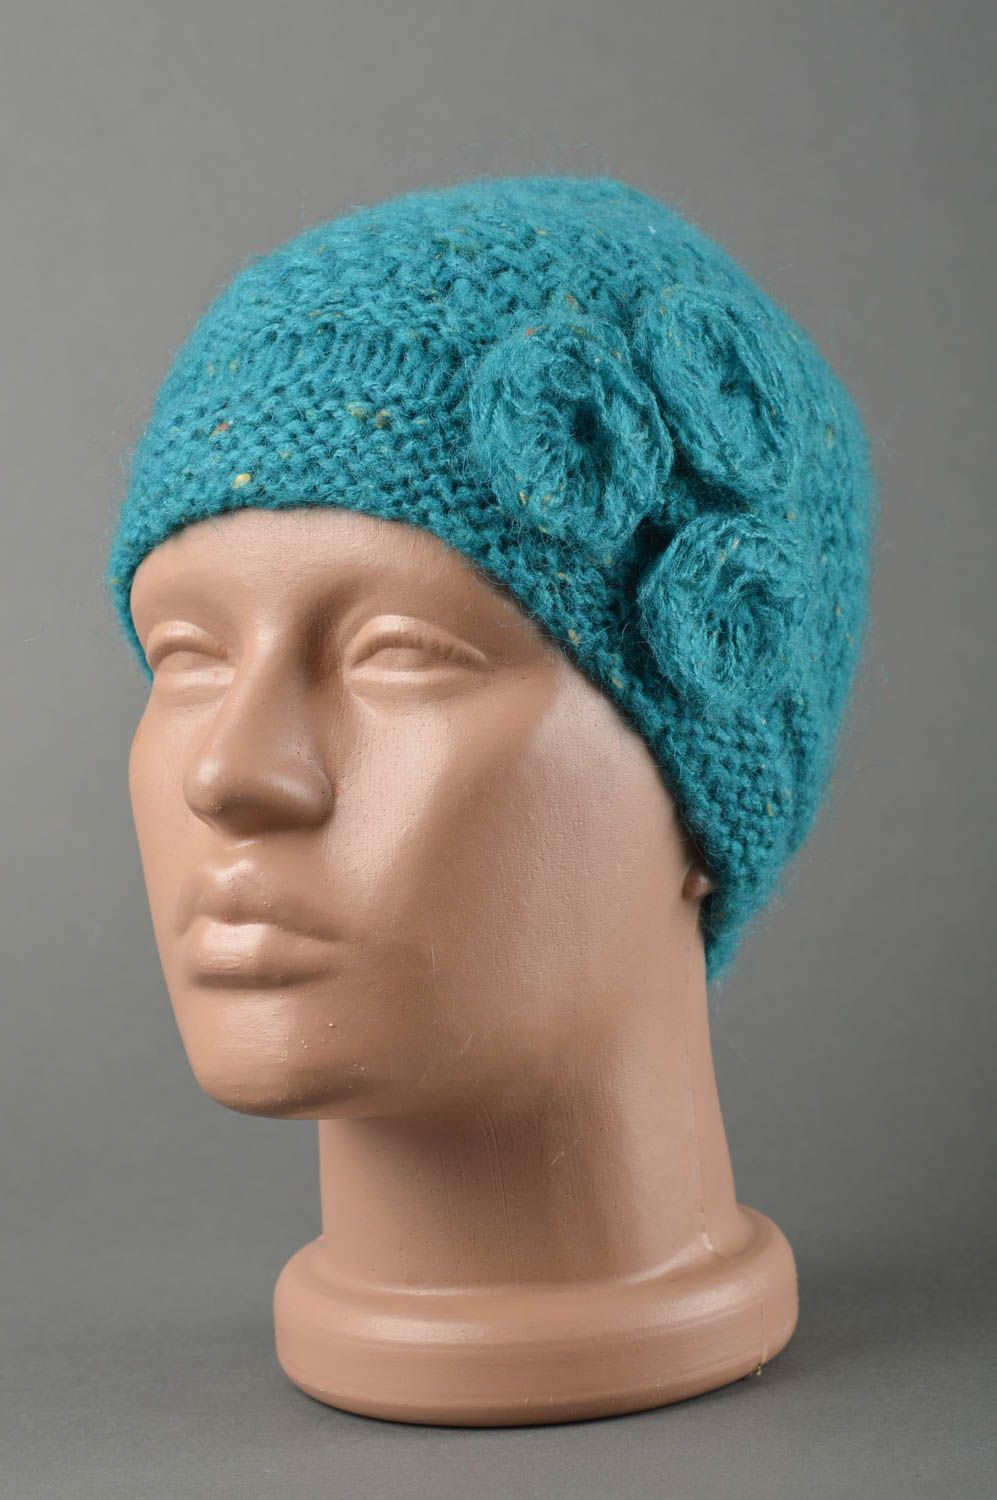 Bonnet chaud fait main Chapeau tricot au crochet chaud turquoise Vêtement enfant photo 1